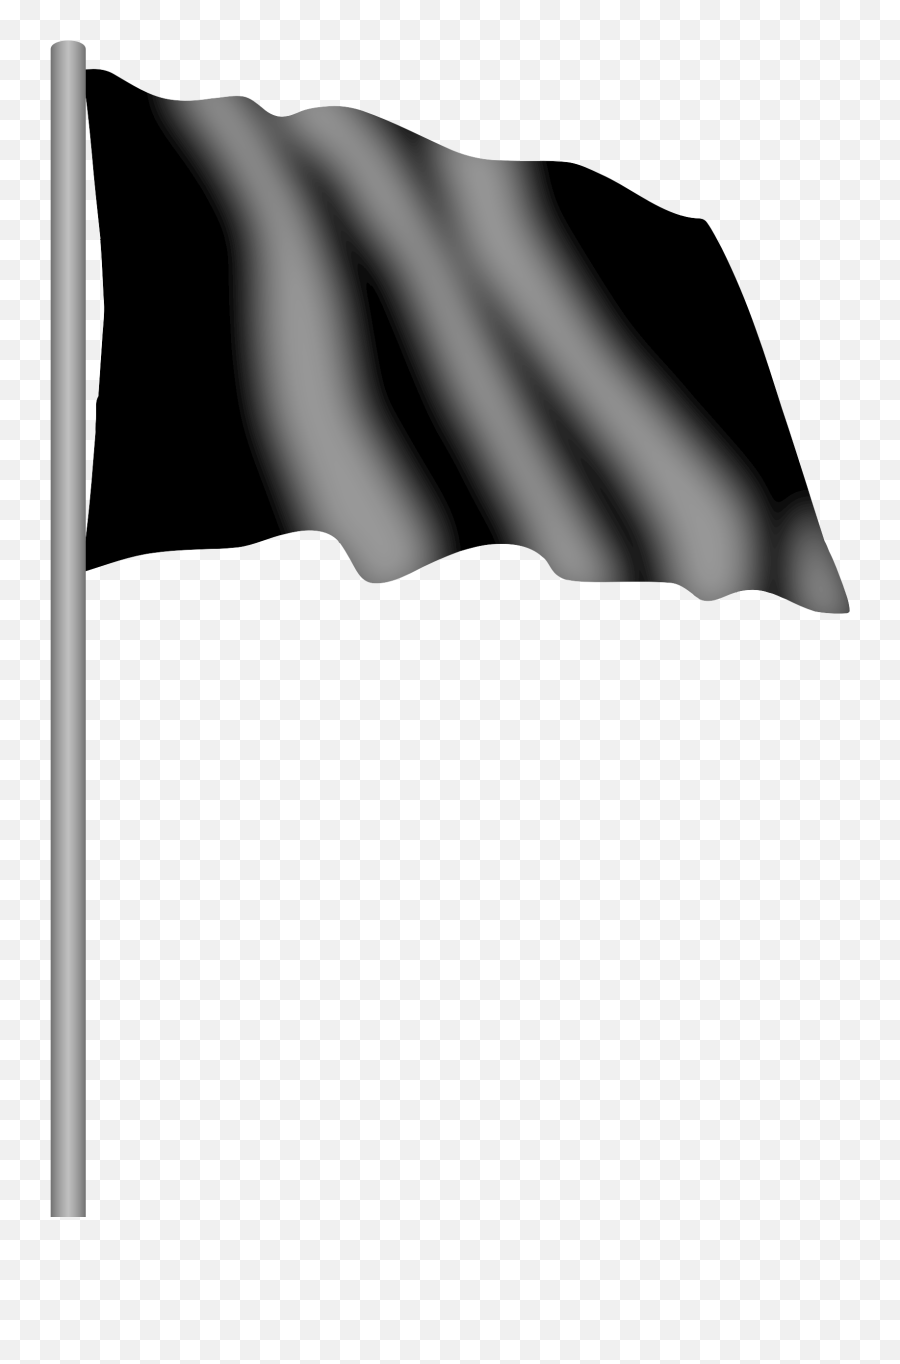 Black Flag PNG Transparent Images Free Download, Vector Files